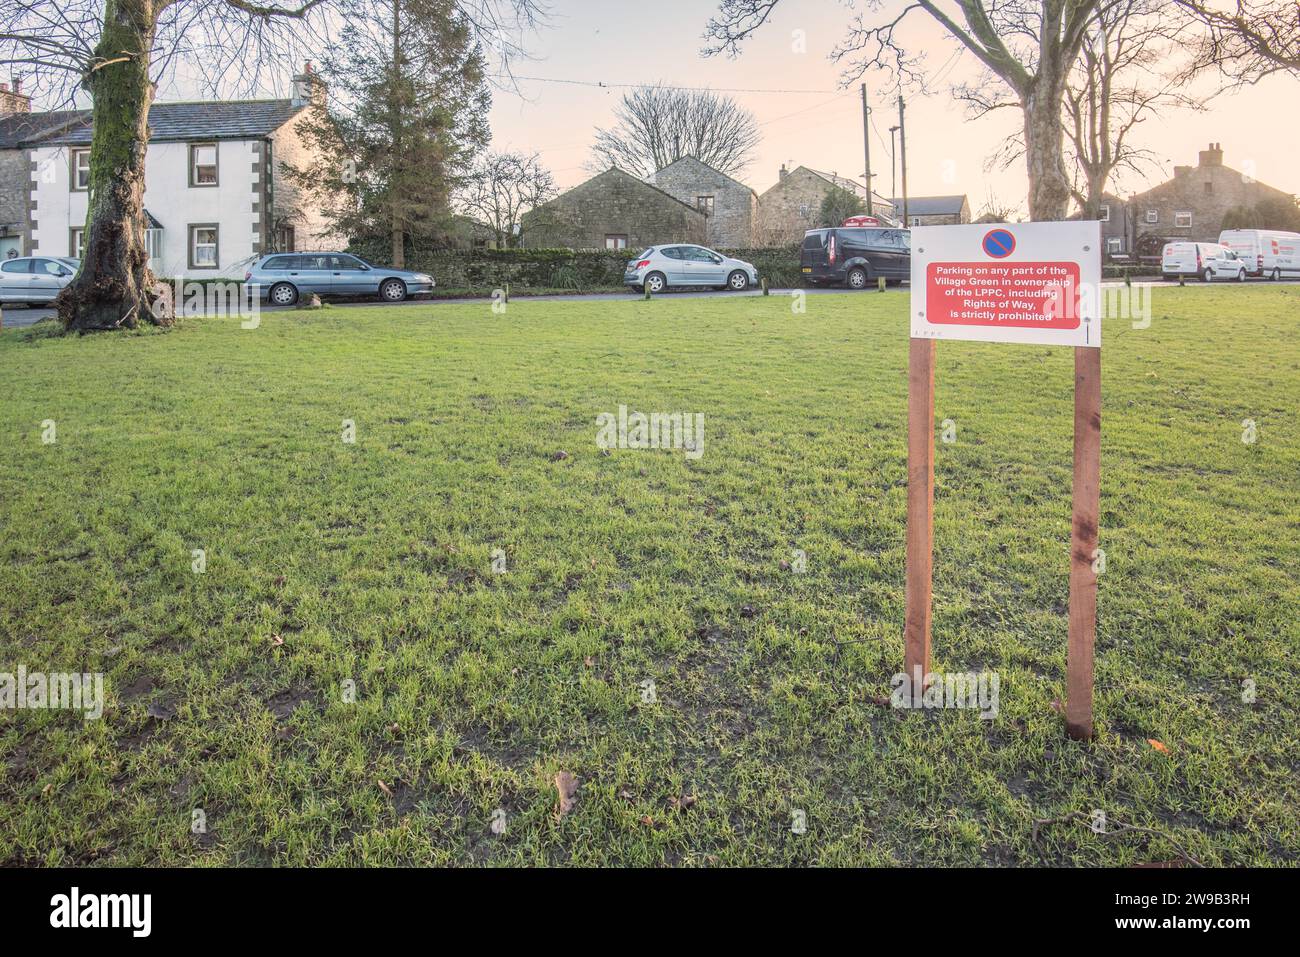 Viste contrastanti sulla segnaletica sui green del villaggio di Long Preston che fanno riferimento al parcheggio nelle varie aree verdi. Foto Stock